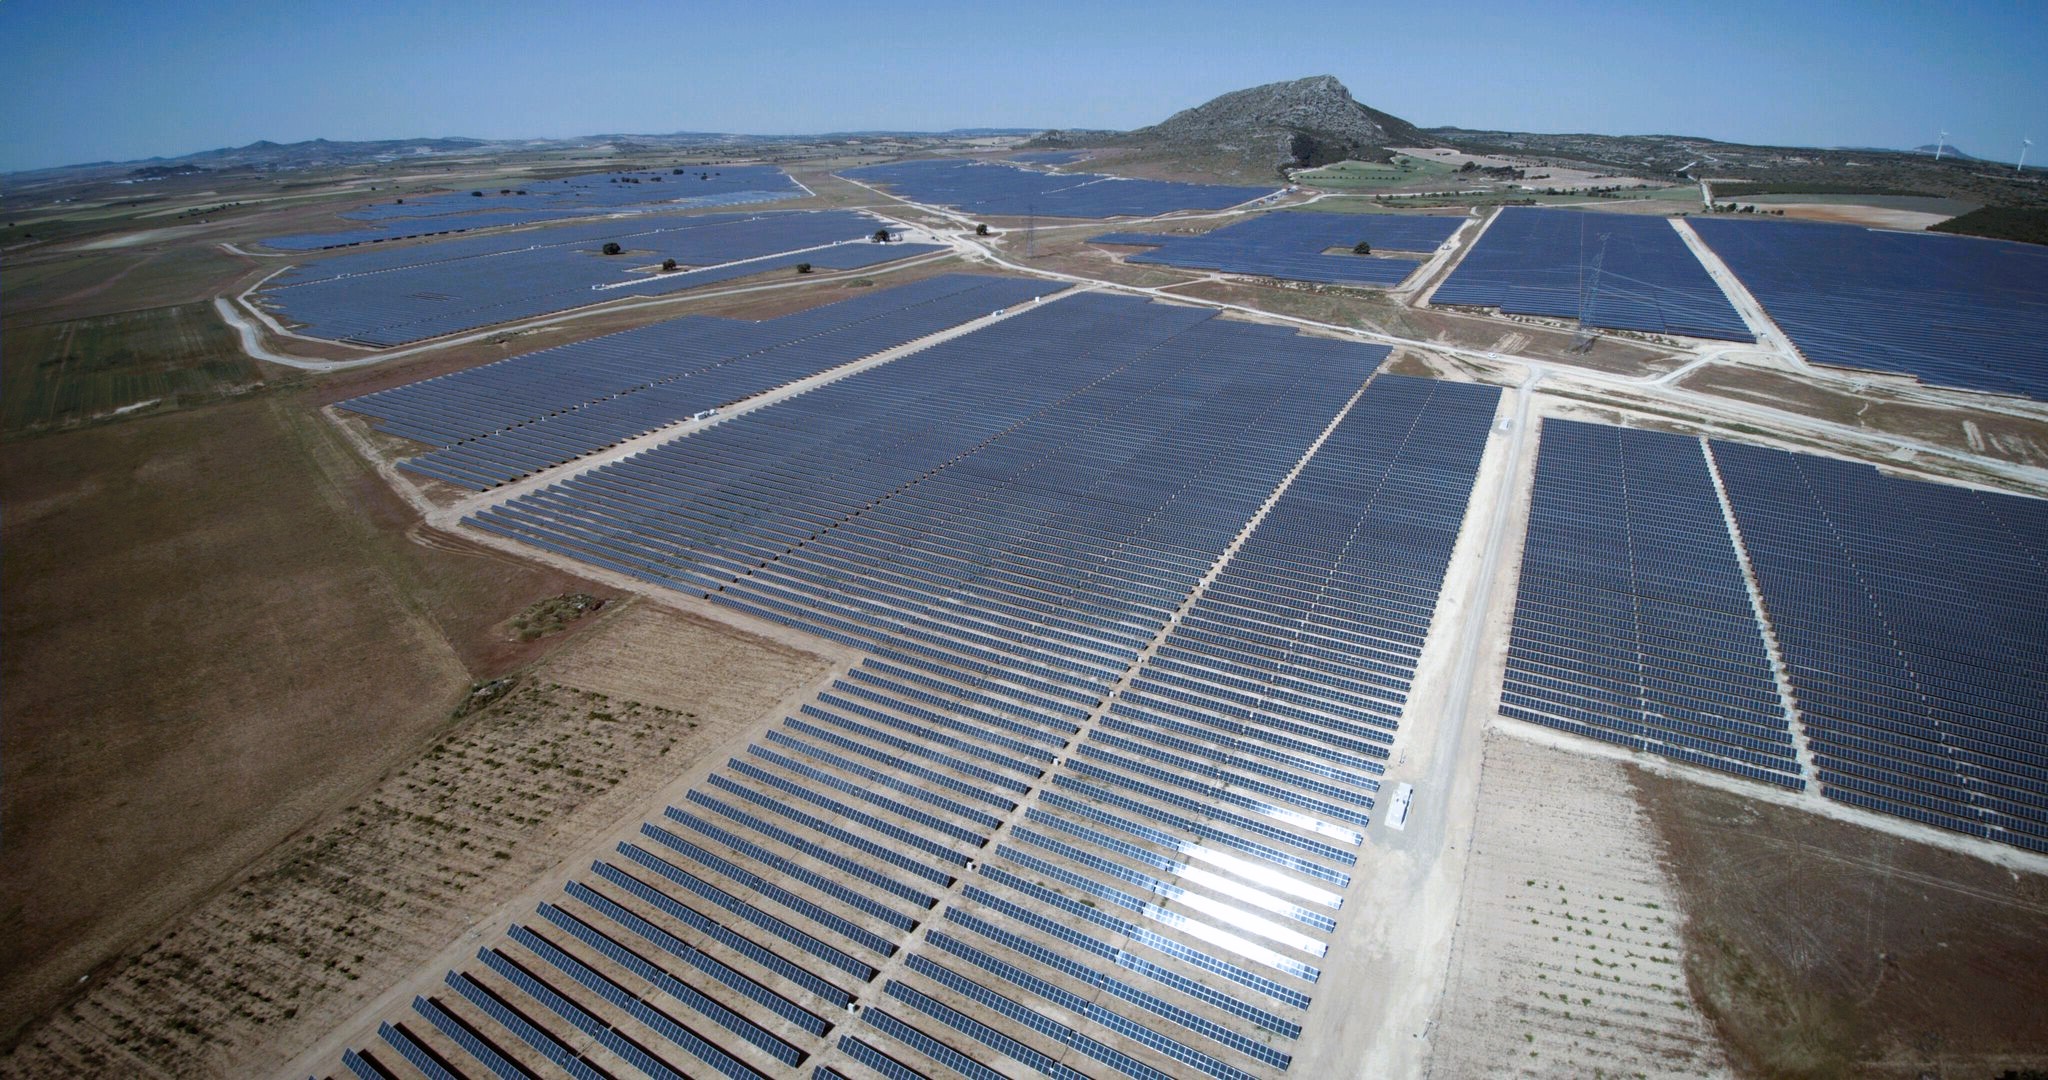 Planta Fotovoltaica Campanario I en Bonete, Cuenca. En óptimo funcionamiento desde 2020.